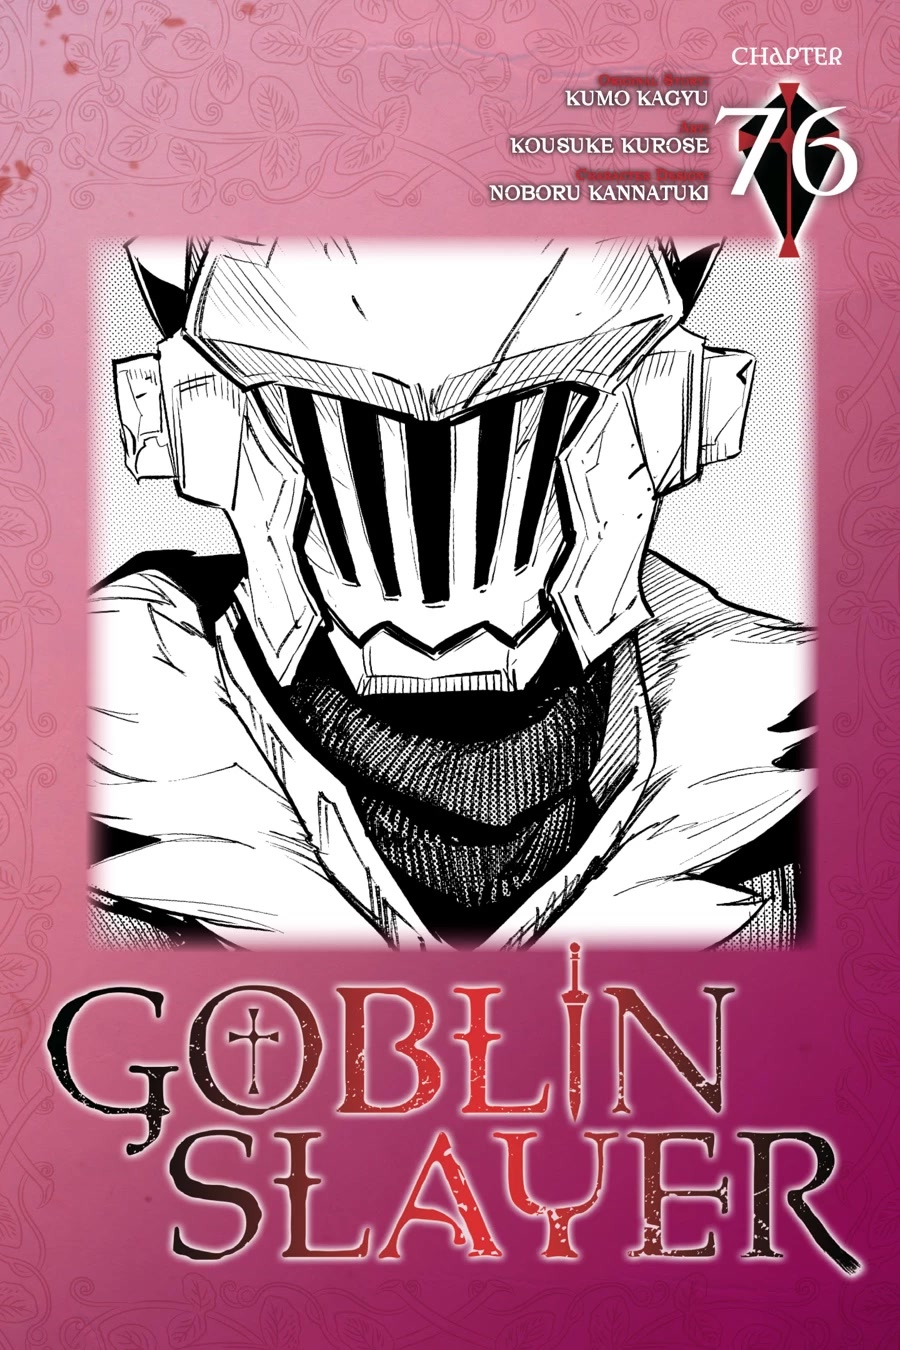 Goblin slaye